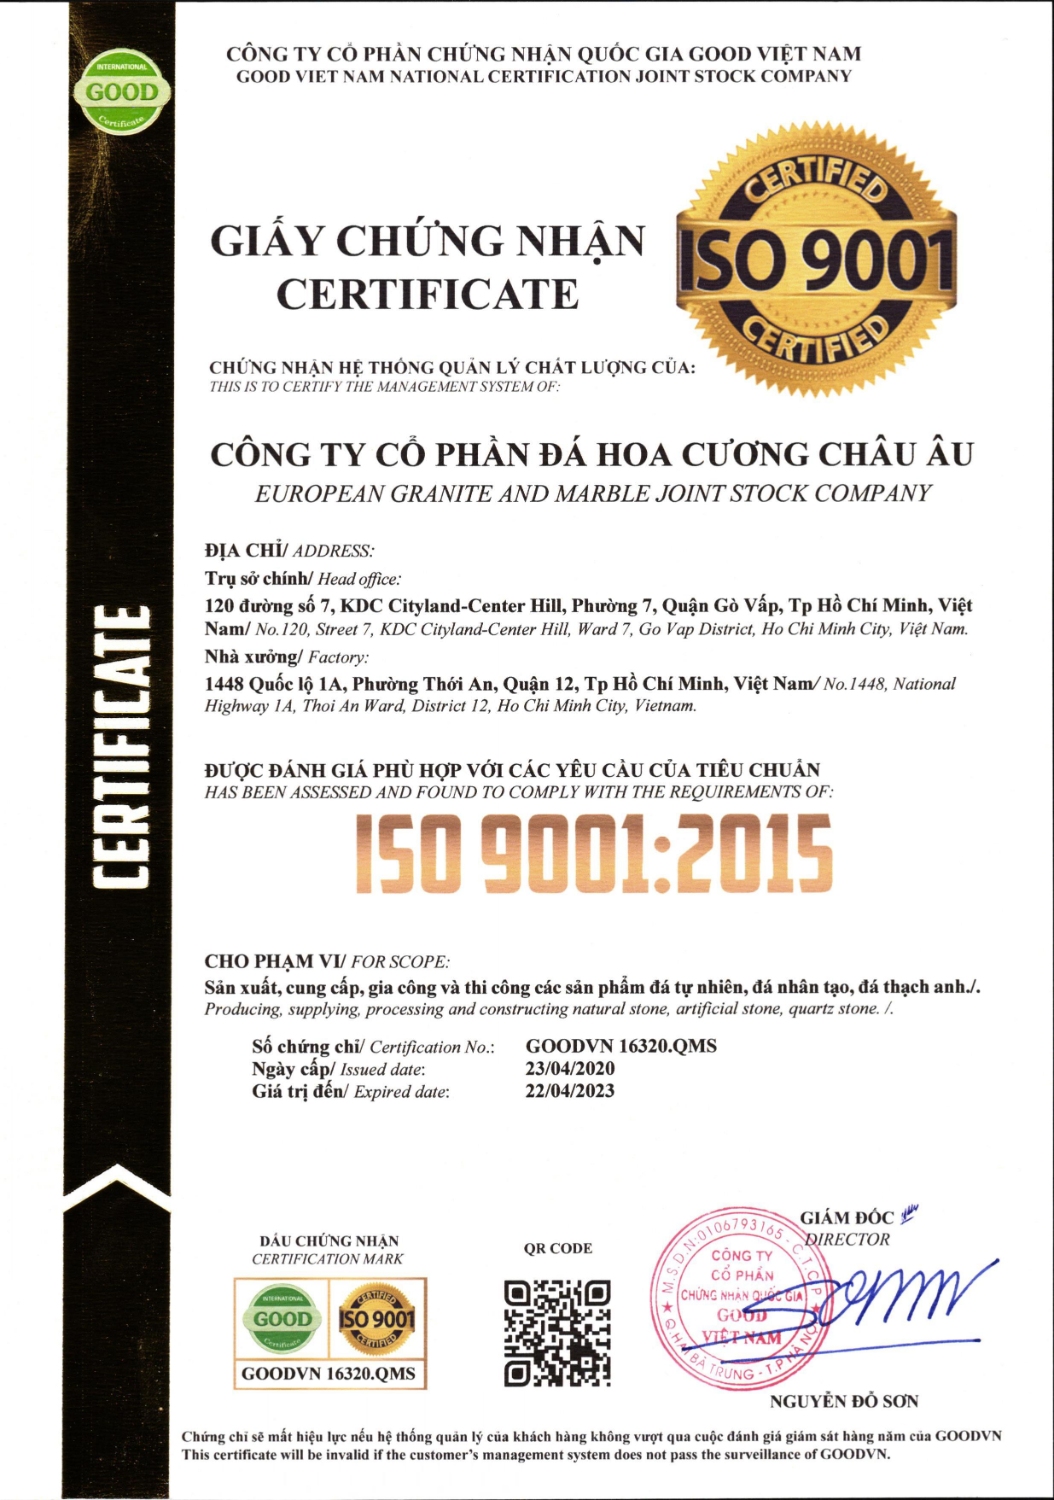 Giay chung nhan certificate